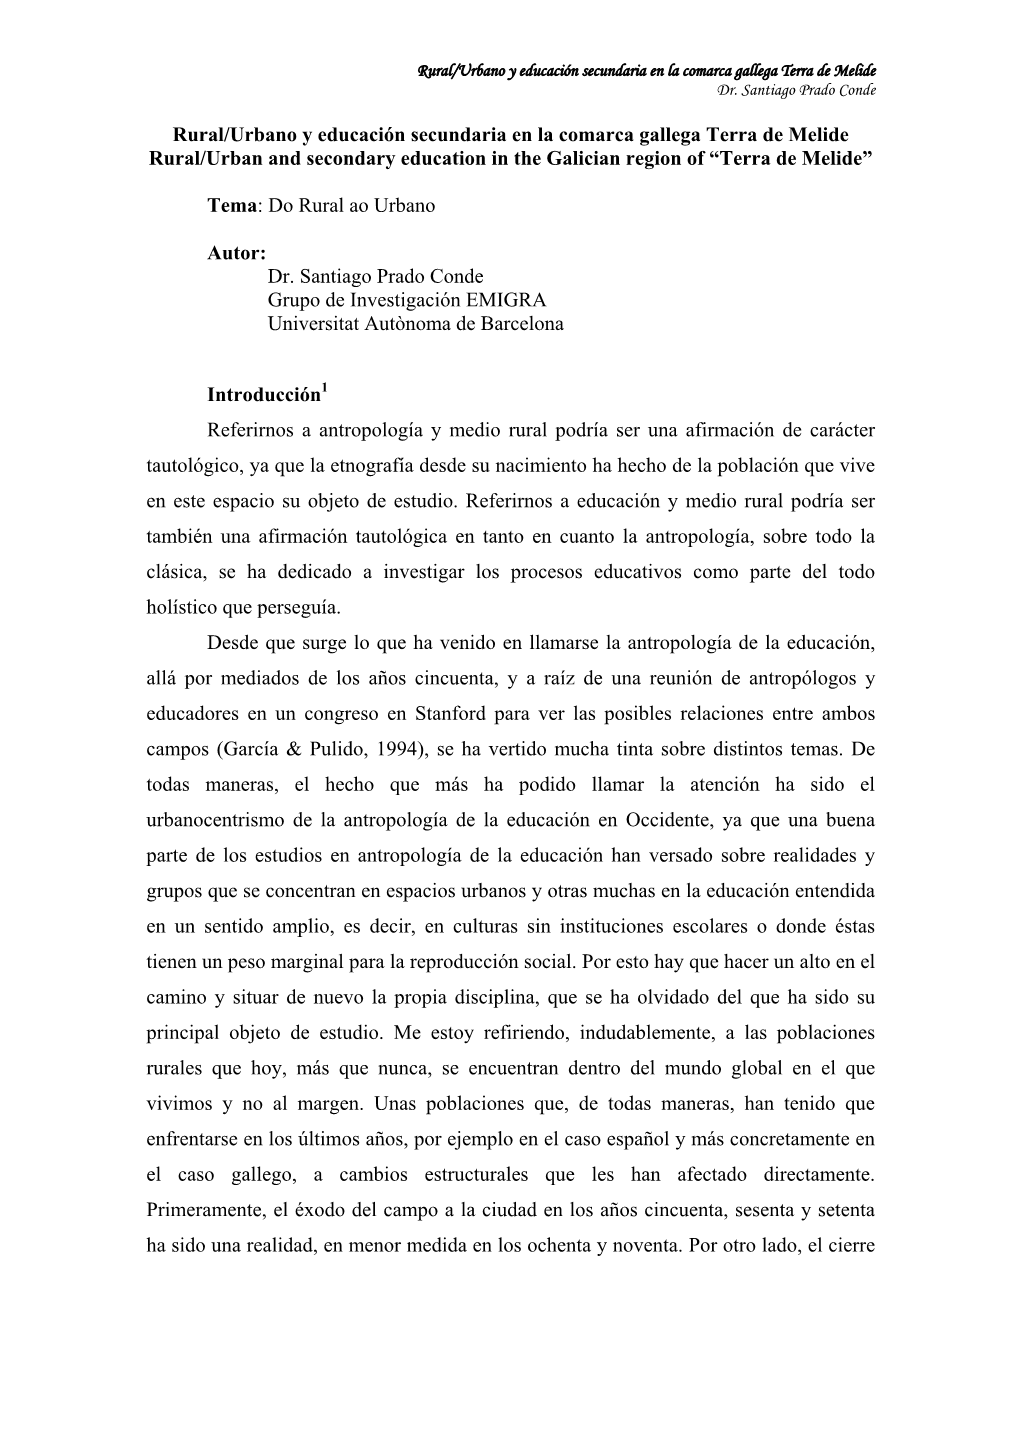 Rural/Urbano Y Educación Secundaria En La Comarca Gallega Terra De Melide Dr